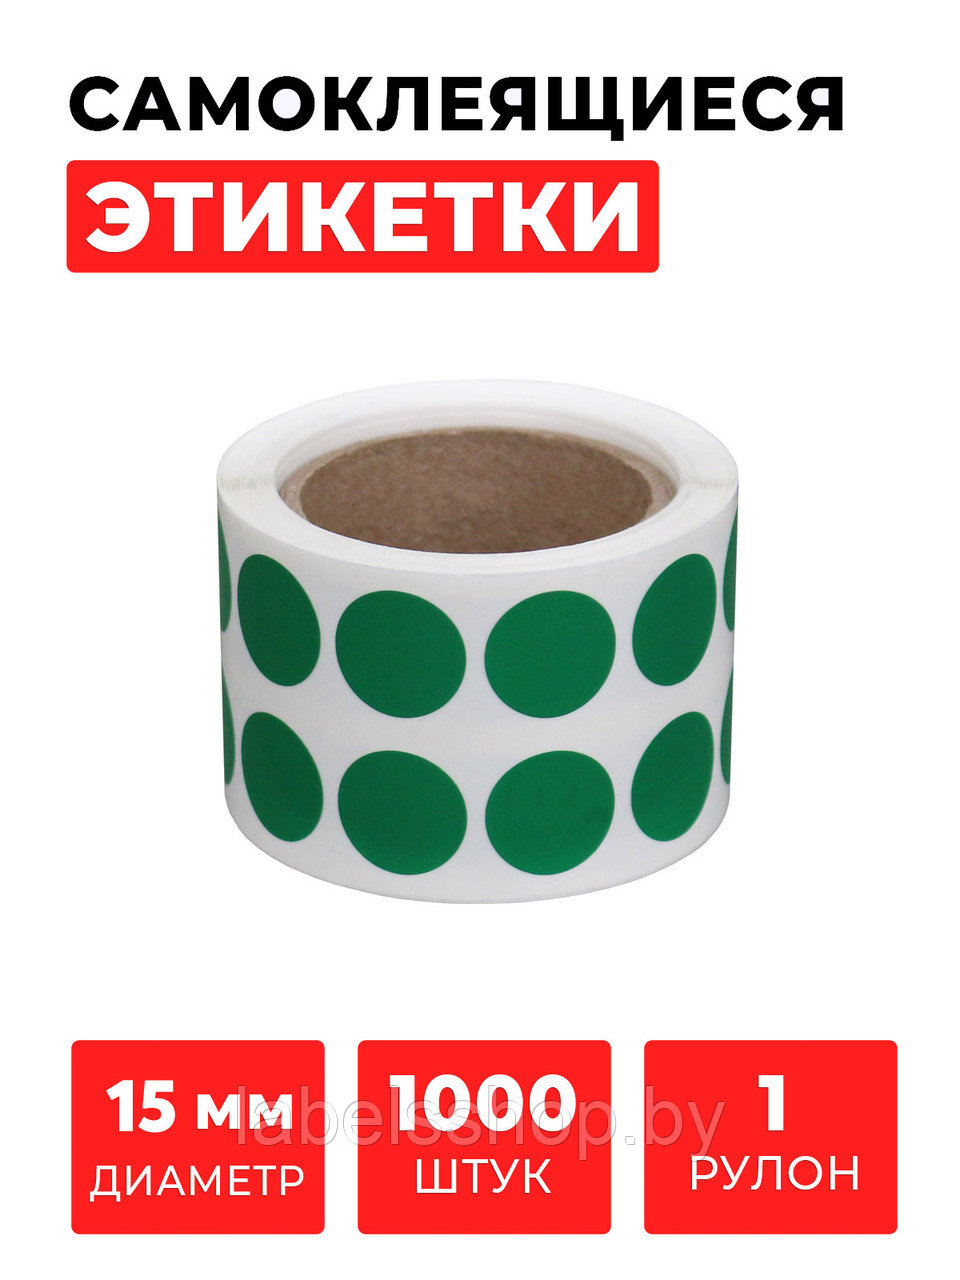 Круглые самоклеящиеся наклейки / этикетки в виде круга (D 15 мм), цвет зеленый, 1000 шт в ролике.